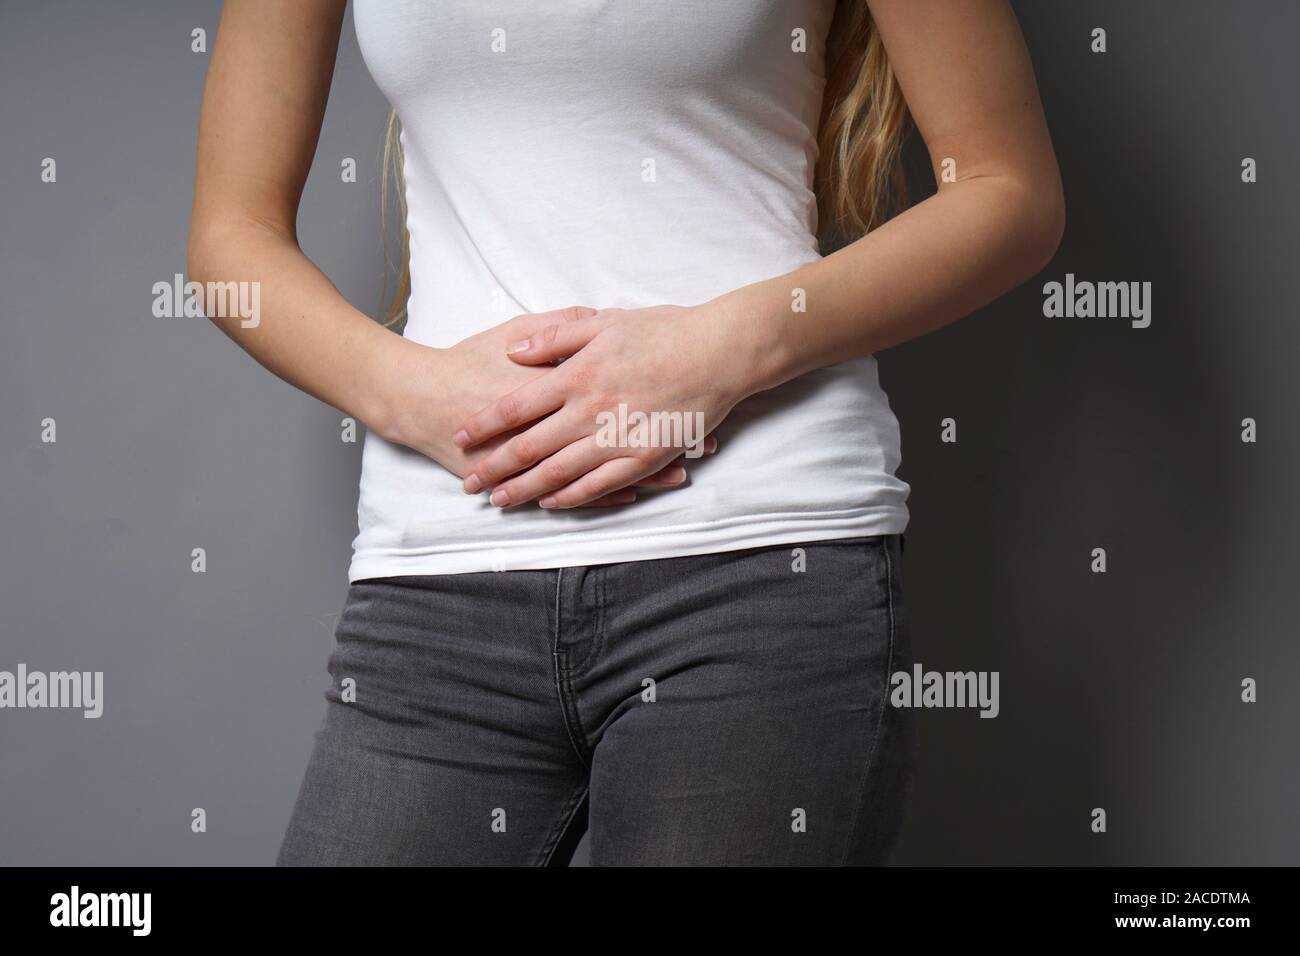 Méconnaissable Jeune femme tenant son ventre à deux mains - concept pour la  dysménorrhée, douleur abdominale, syndrome du côlon irritable, le ventre ou  d'estomac, les périodes douloureuses ou les crampes menstruelles Photo